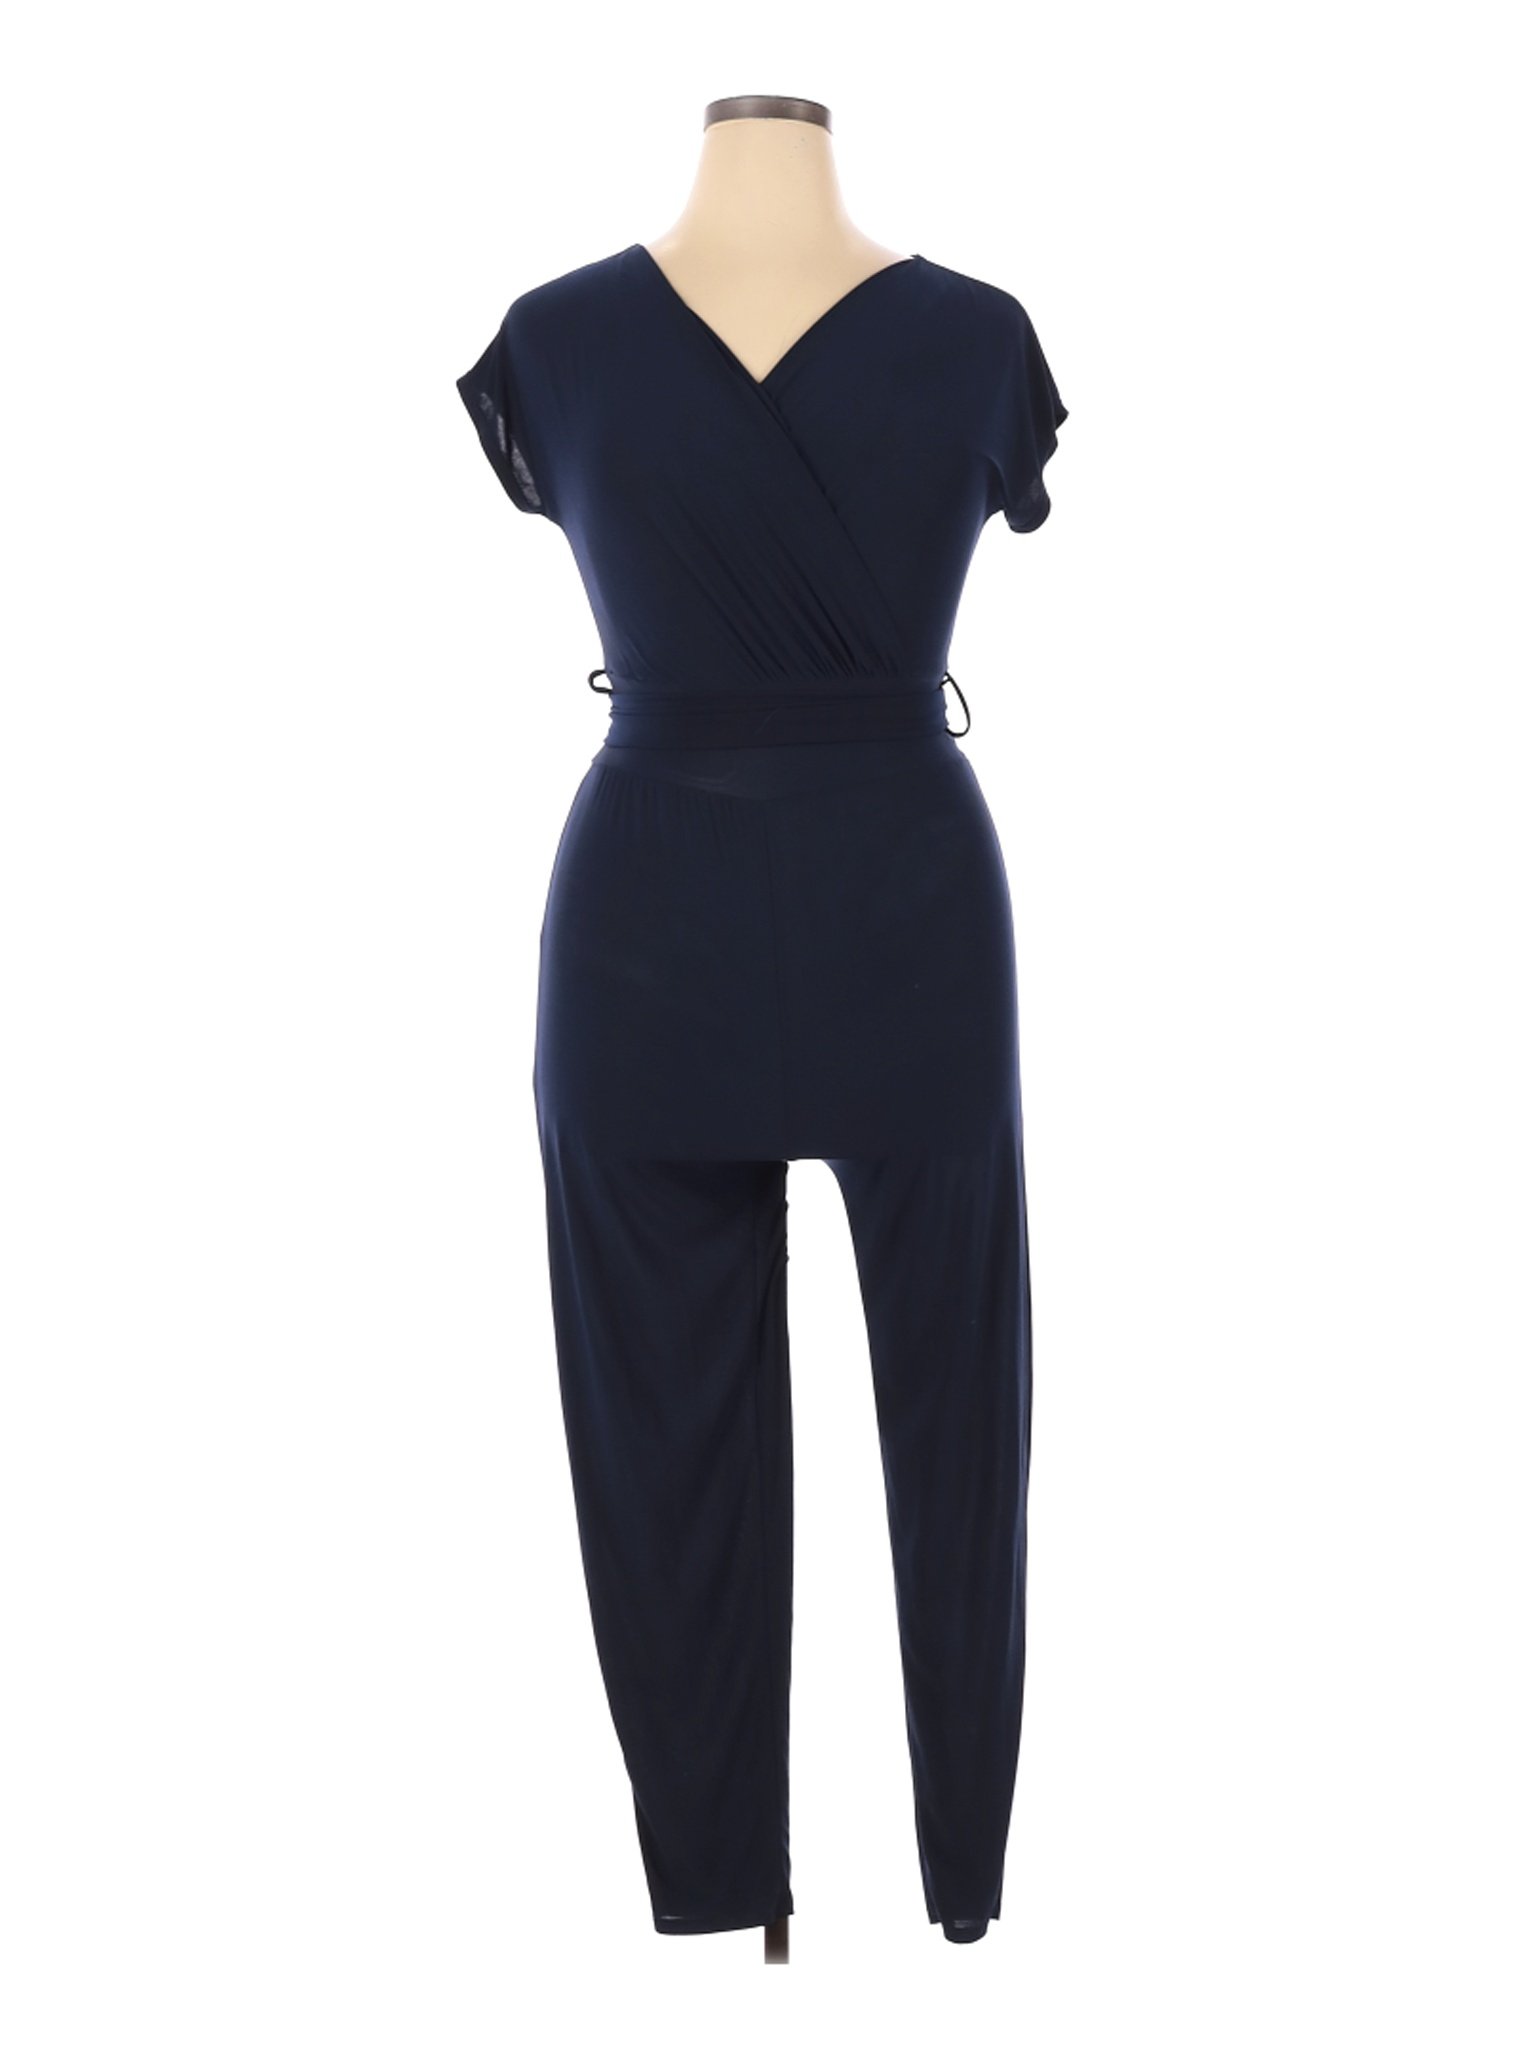 Rolla Coster Women Blue Jumpsuit L | eBay